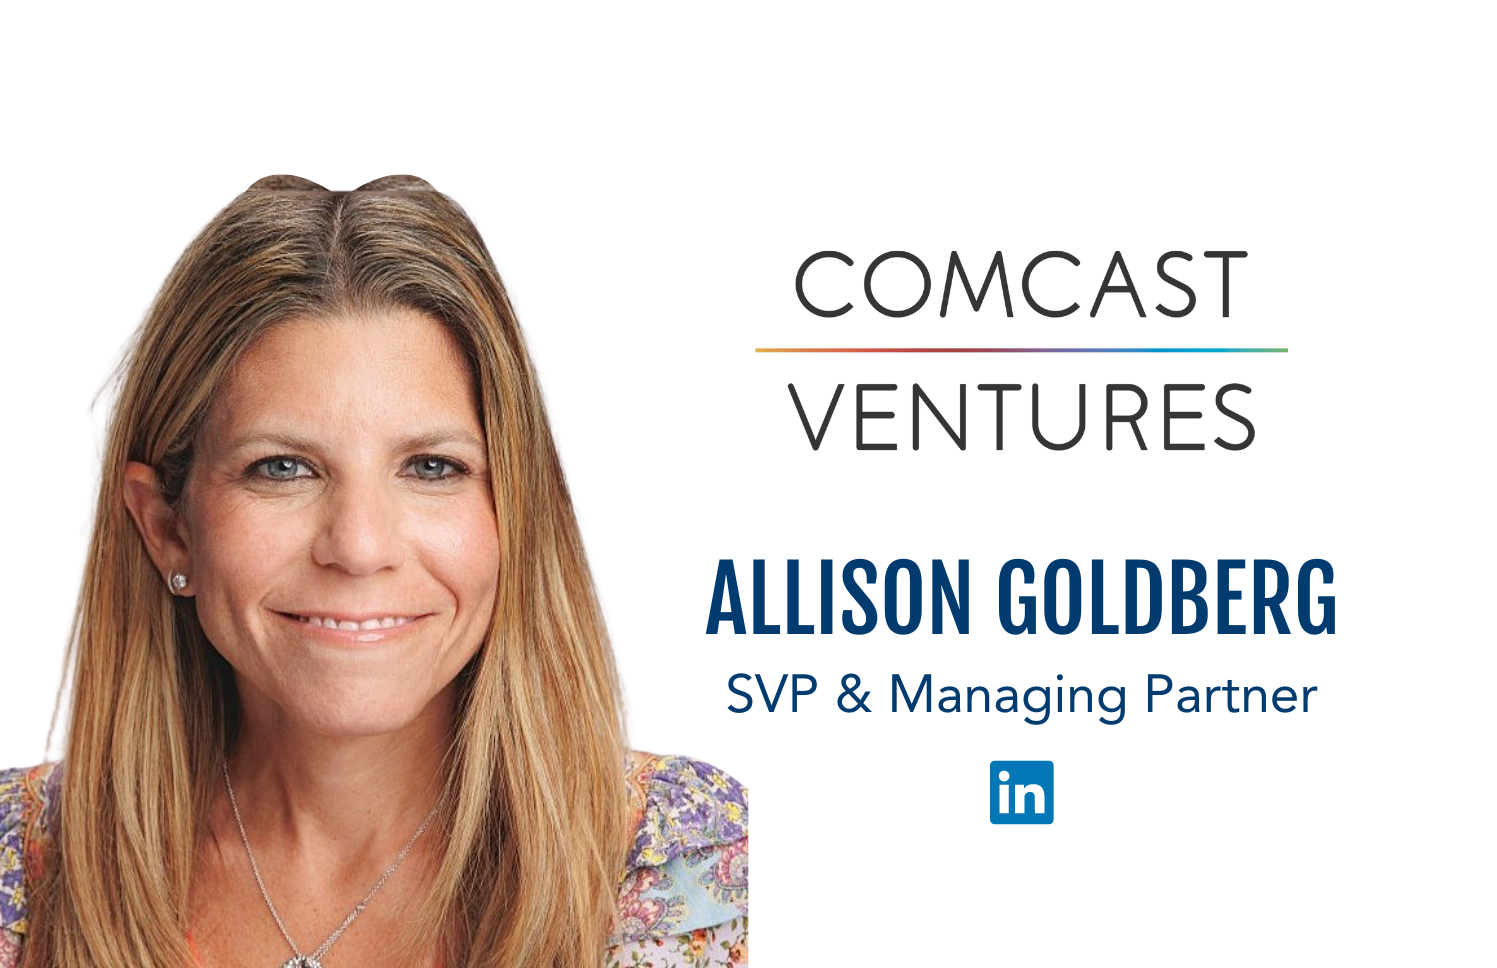 Rogue Women VI Speaker Allison Goldberg, SVP and Managing Partner at Comcast Ventures